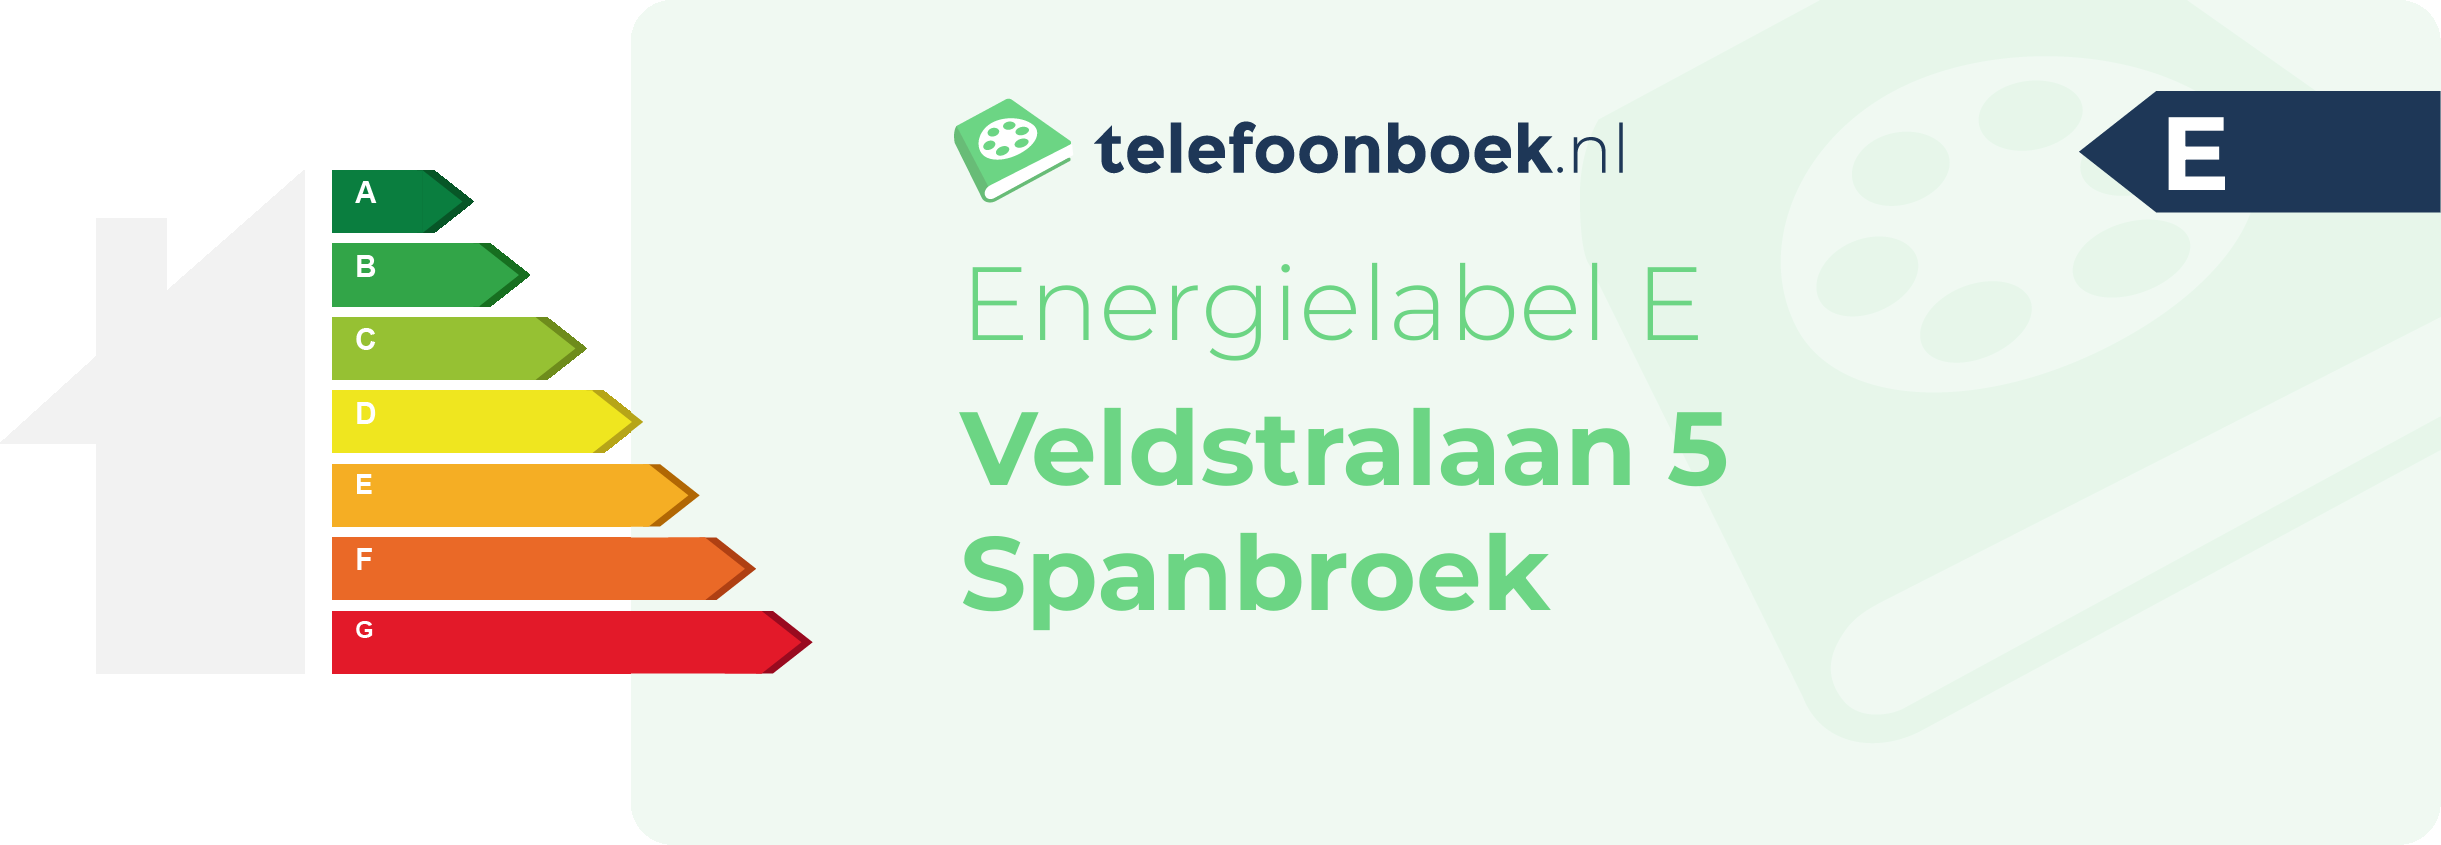 Energielabel Veldstralaan 5 Spanbroek